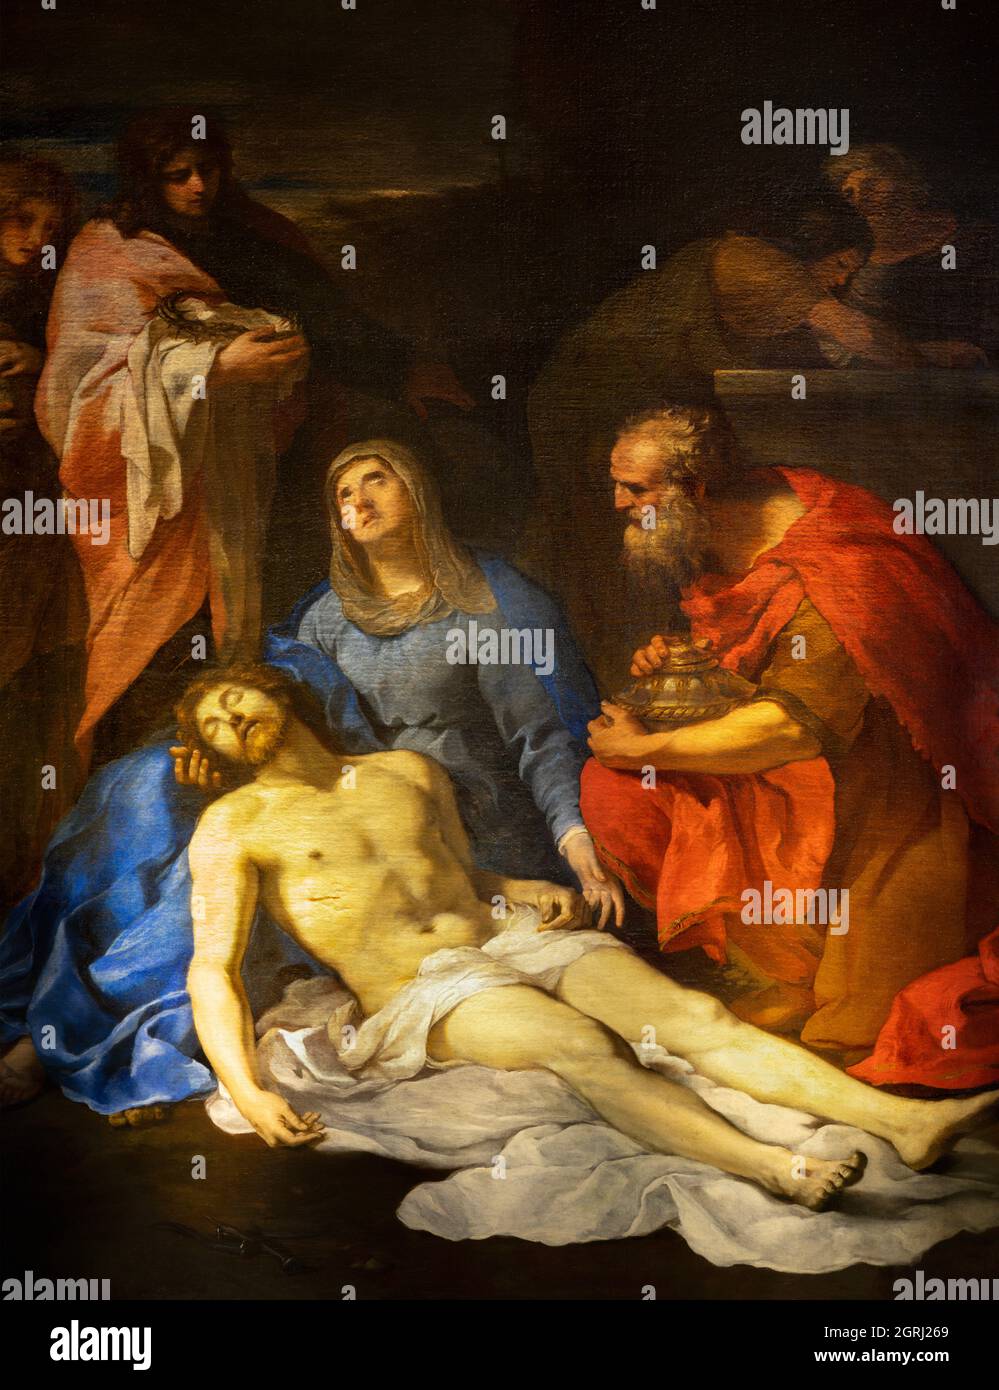 ROME, ITALY - AUGUST 31, 2021: The painting of Pieta in the church Santa Maria della Concezione dei Cappuccini by Andrea Camassei (1602 - 1649). Stock Photo